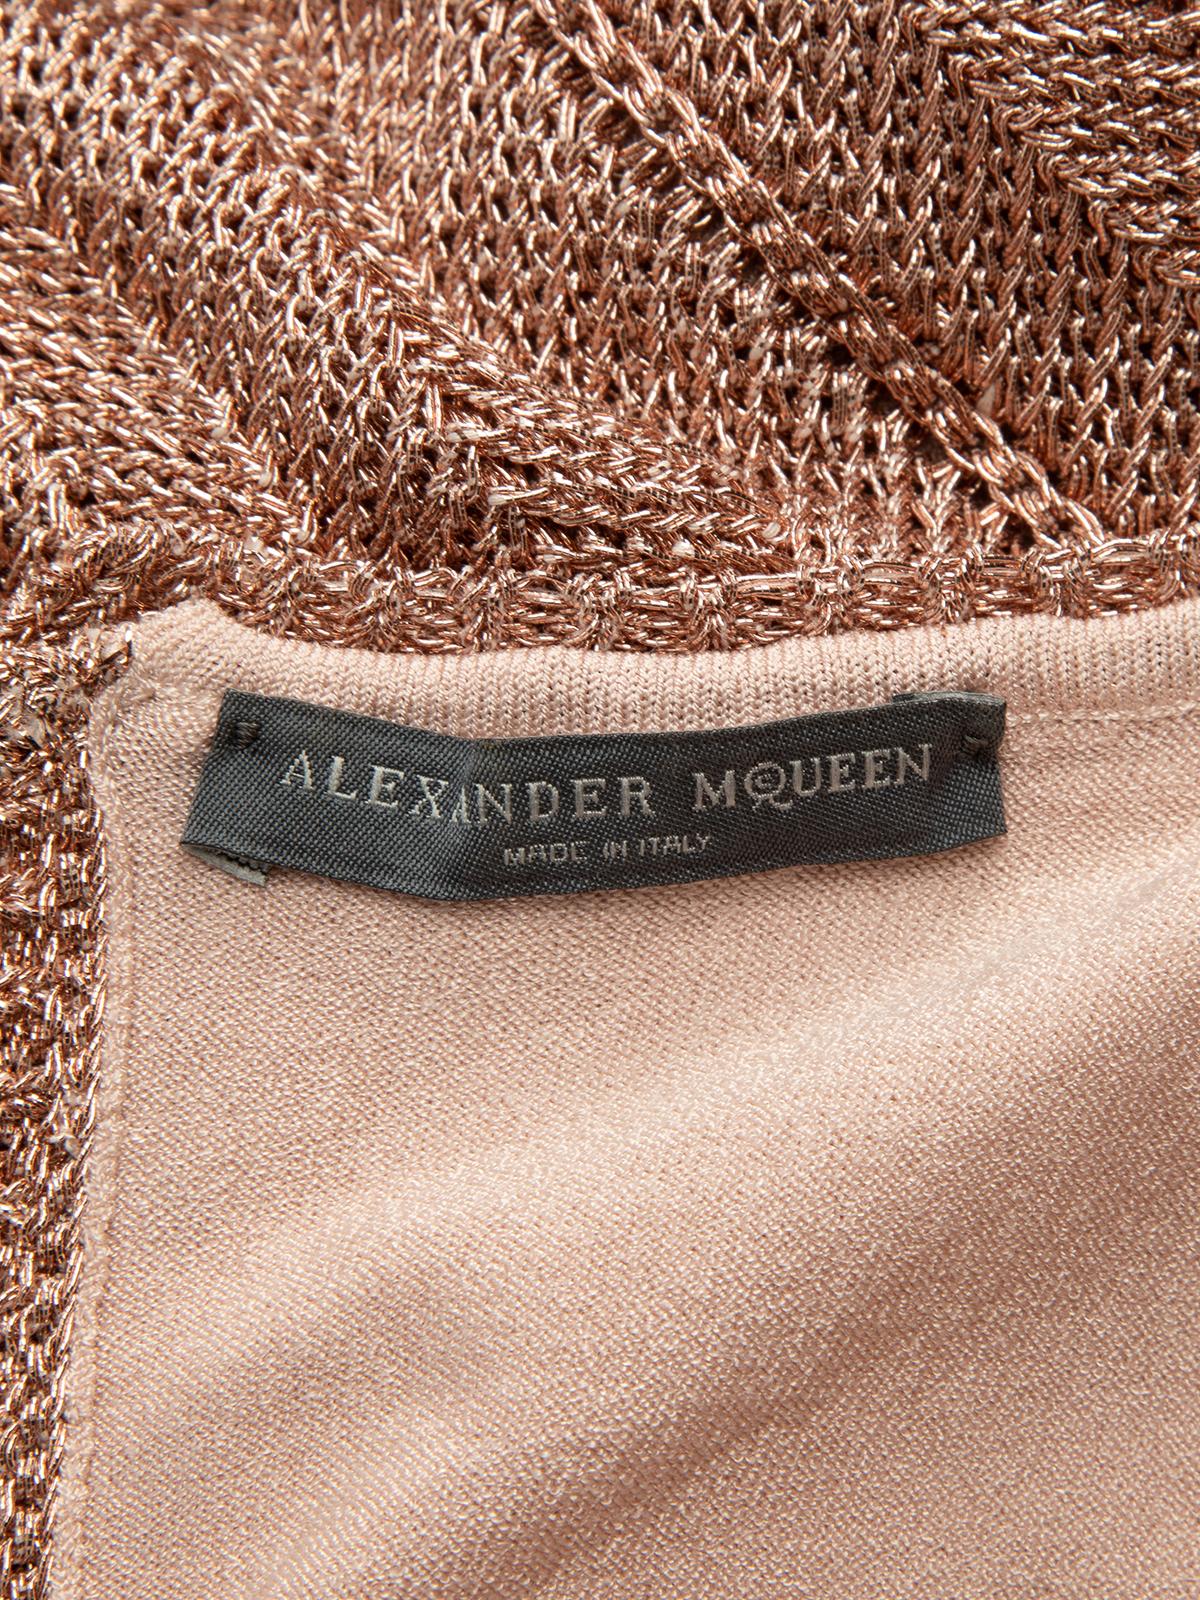 Pre-Loved Alexander McQueen Women's Sleeveless Metallic Dress 2